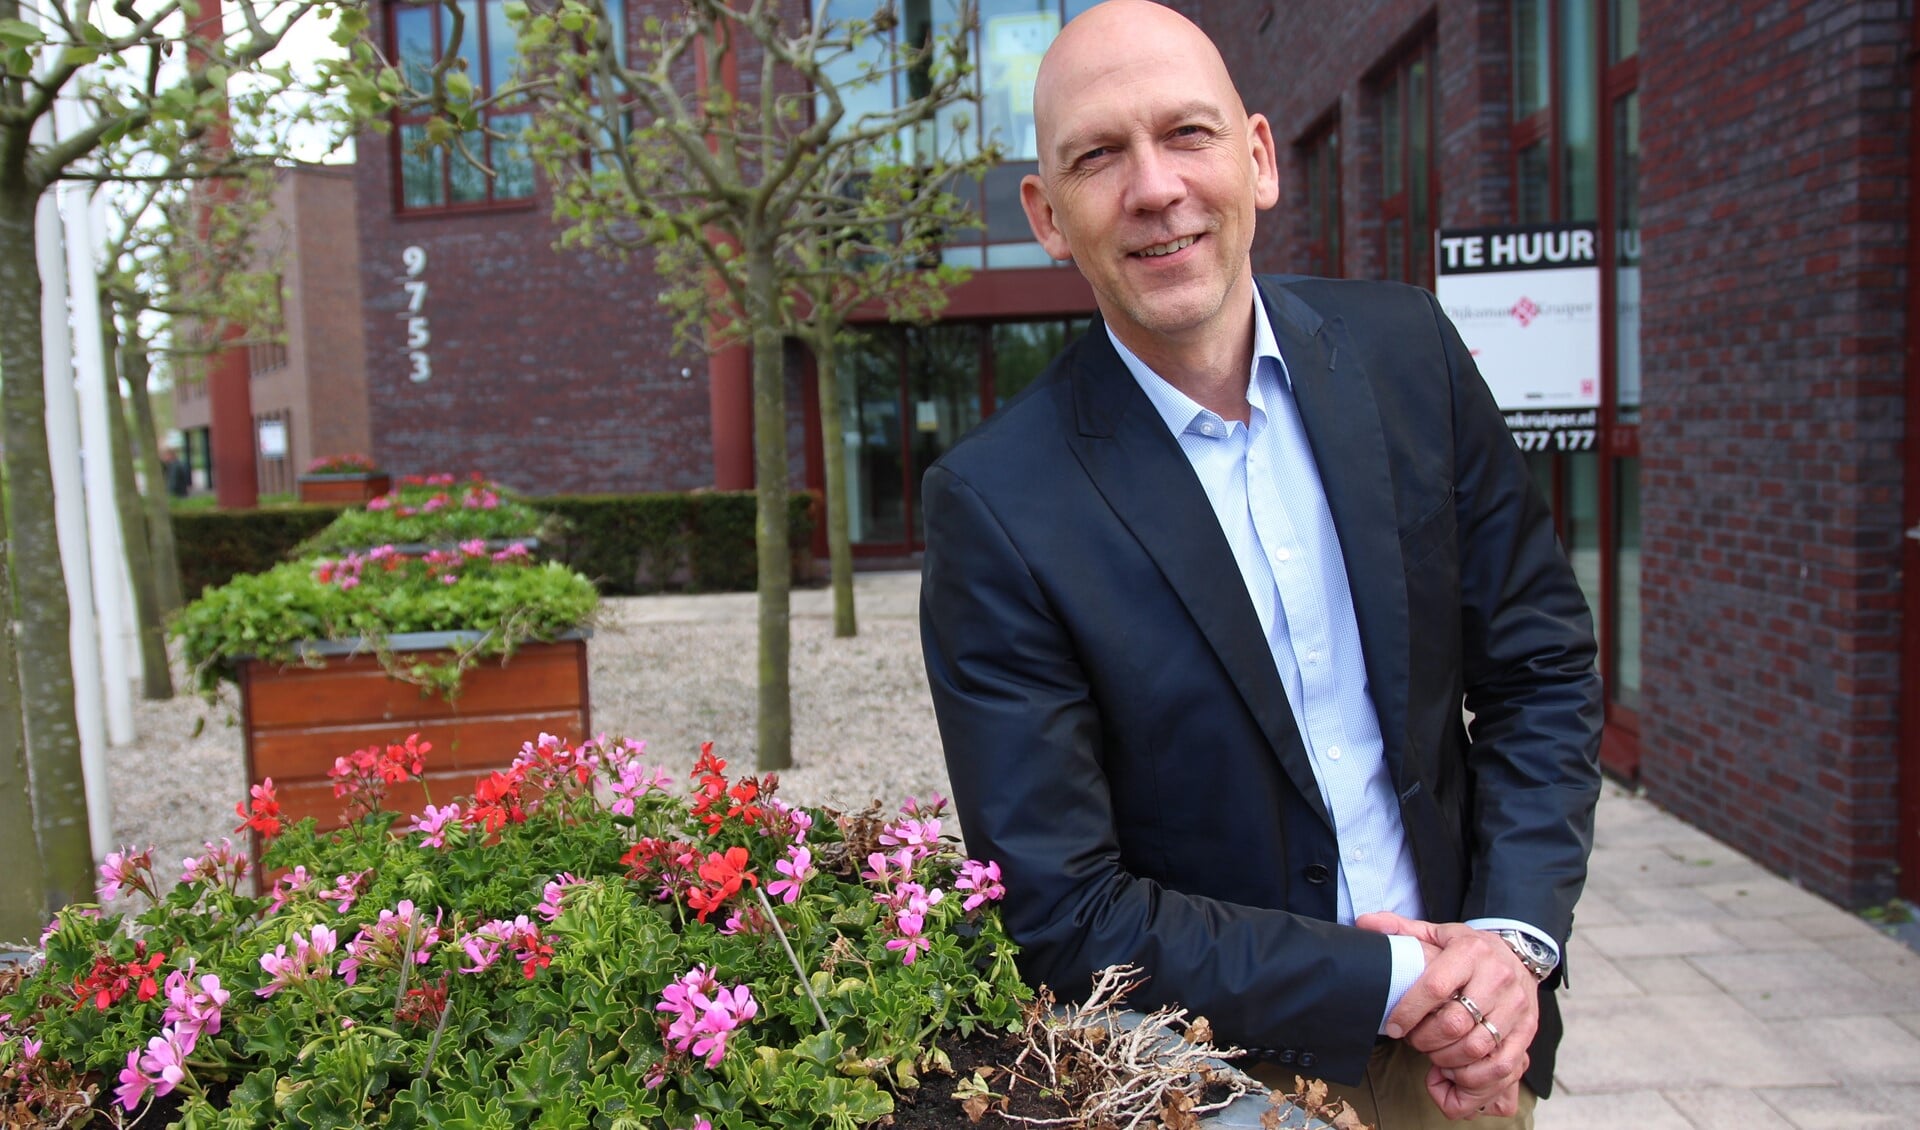 Reinoud de Vries is tien jaar directeur/bestuurder geweest van de Octantscholengroep. Hij vertrekt per 1 juni naar de Onderwijsgroep Zuid-Hollandse Waarden.